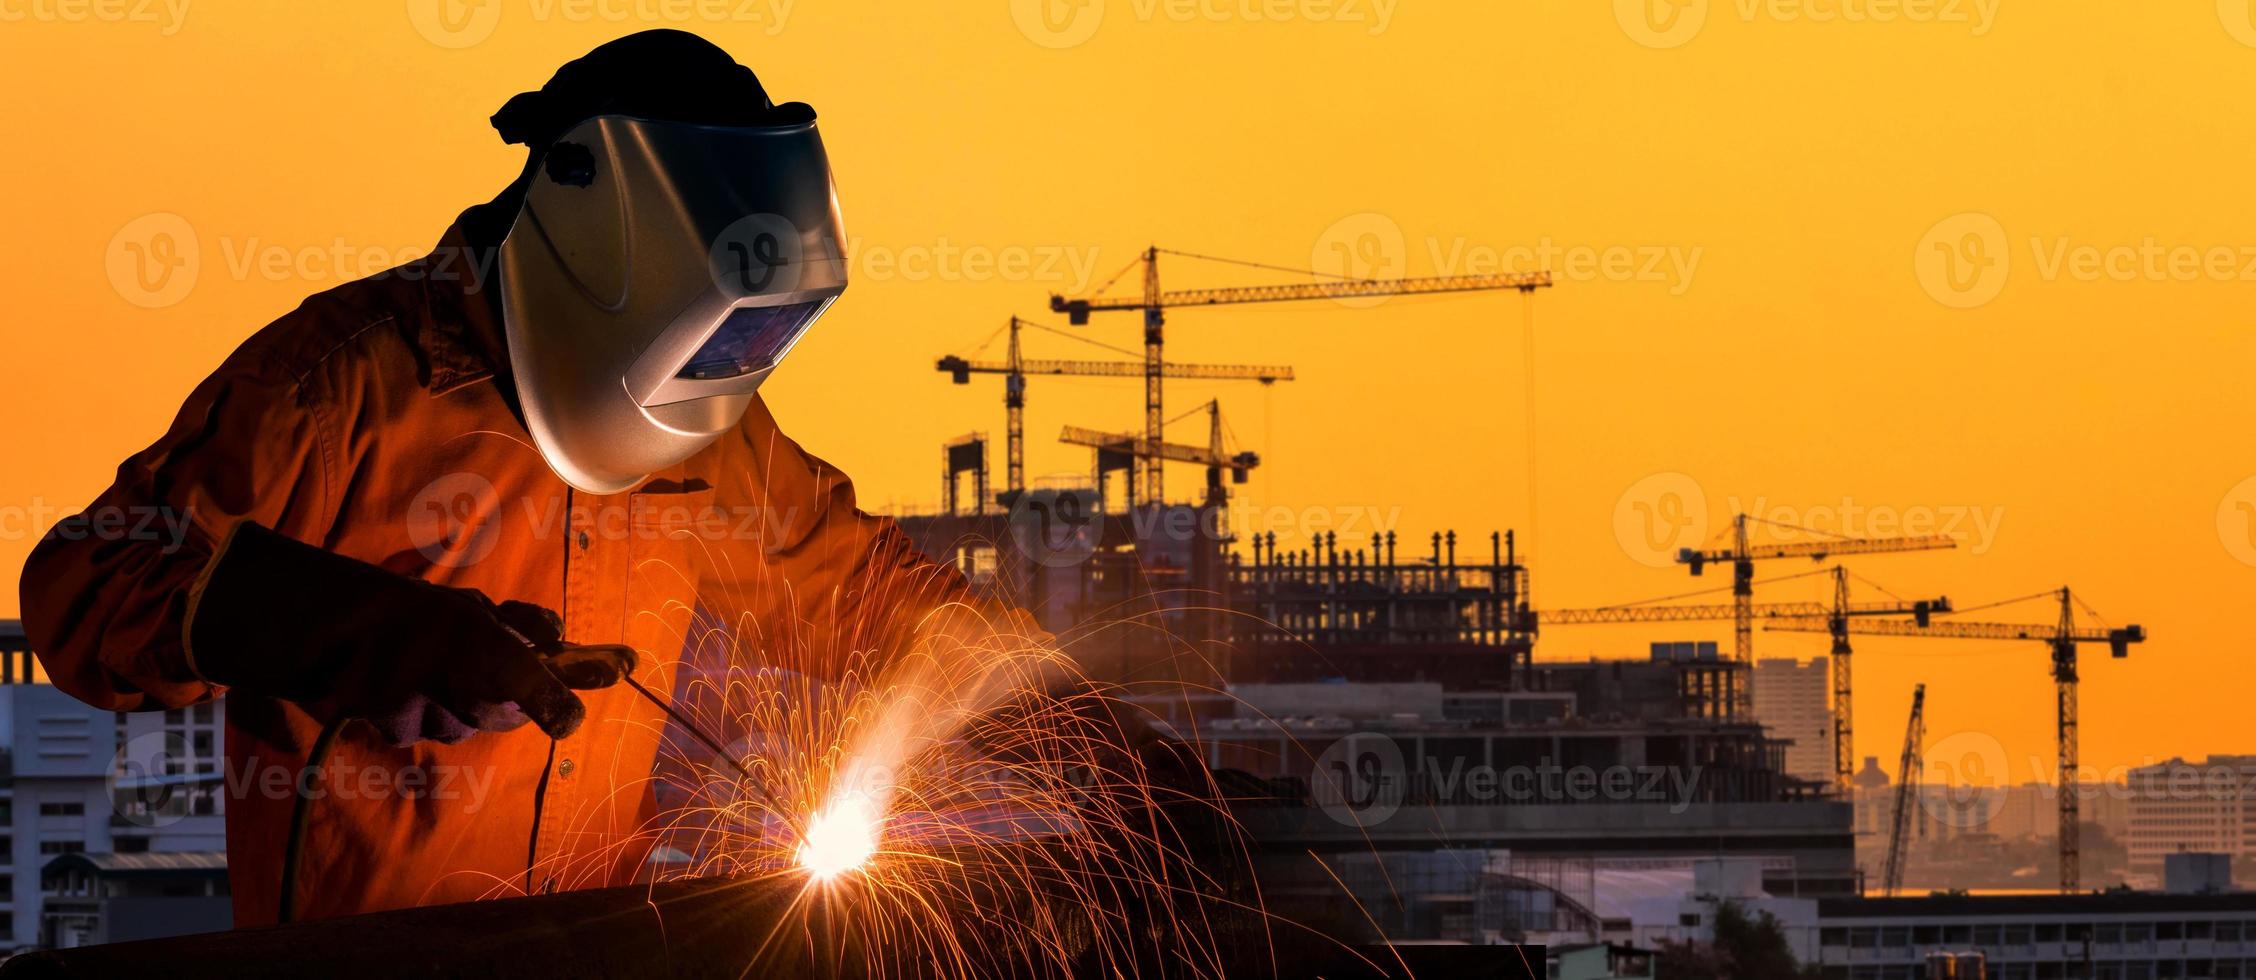 Industriearbeiter Schweißen Stahlkonstruktion für Infrastrukturbauprojekt mit Baustelle im Hintergrund. foto